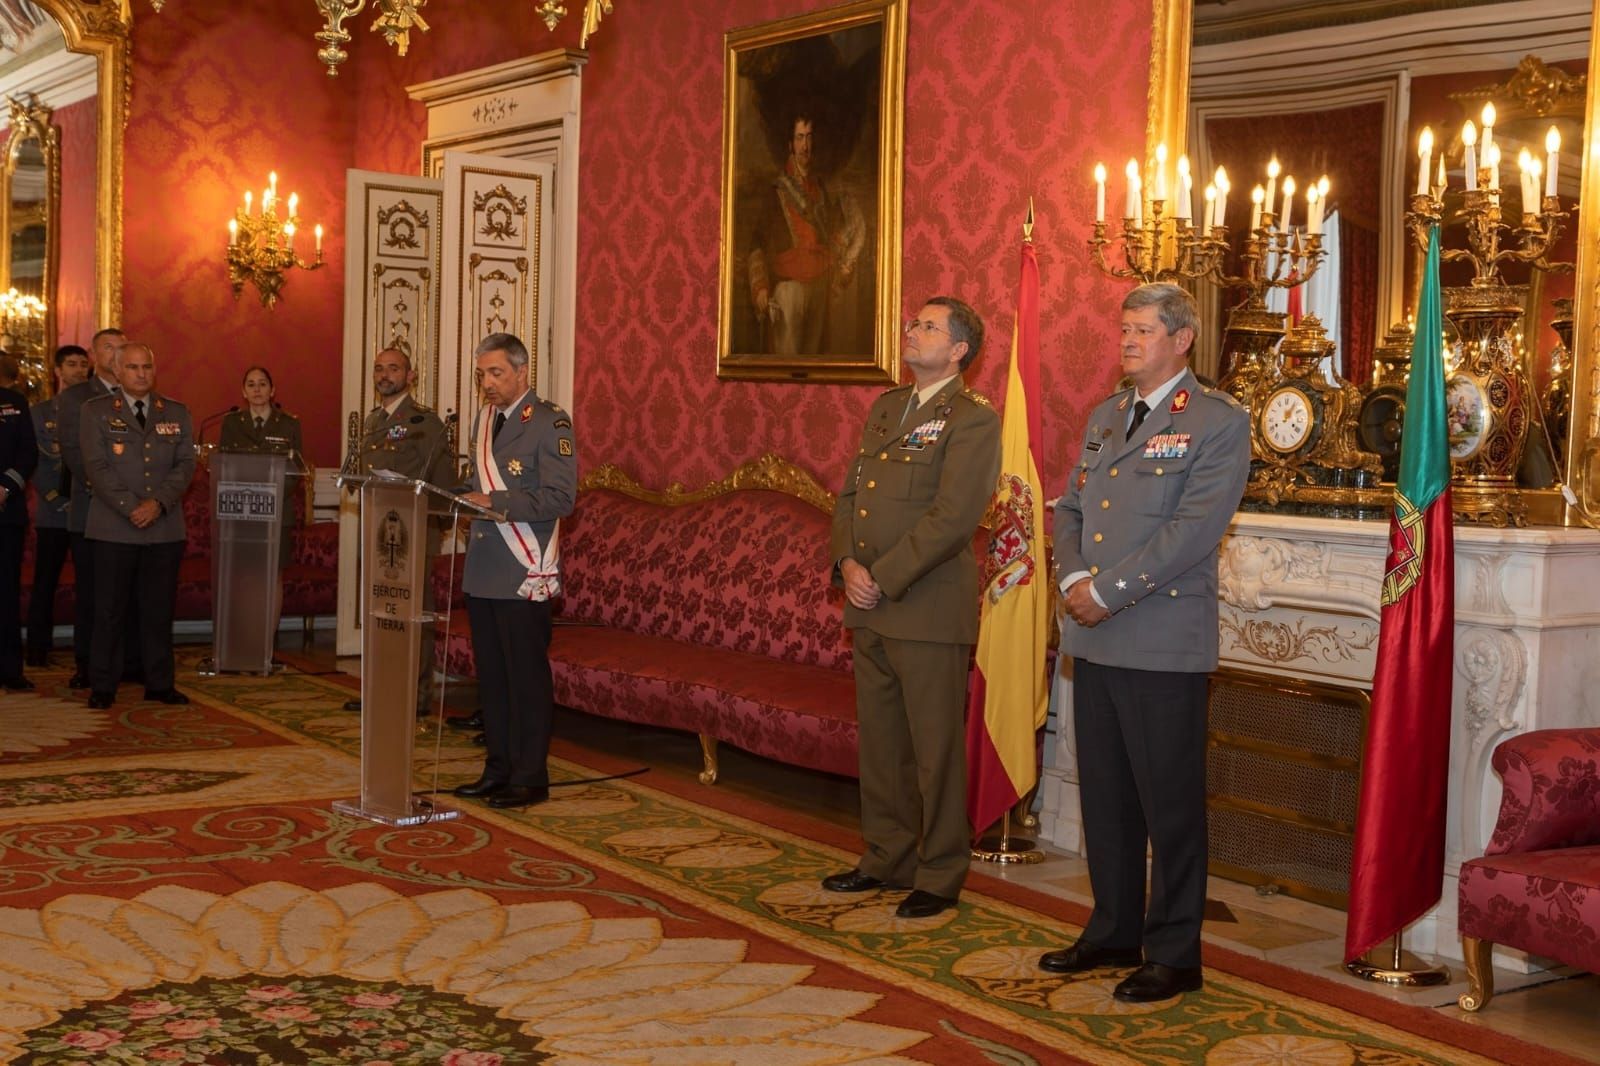 El JEME recibe al GE Eduardo Manuel Braga da Cruz Mendes Ferrão JEME Exército Português